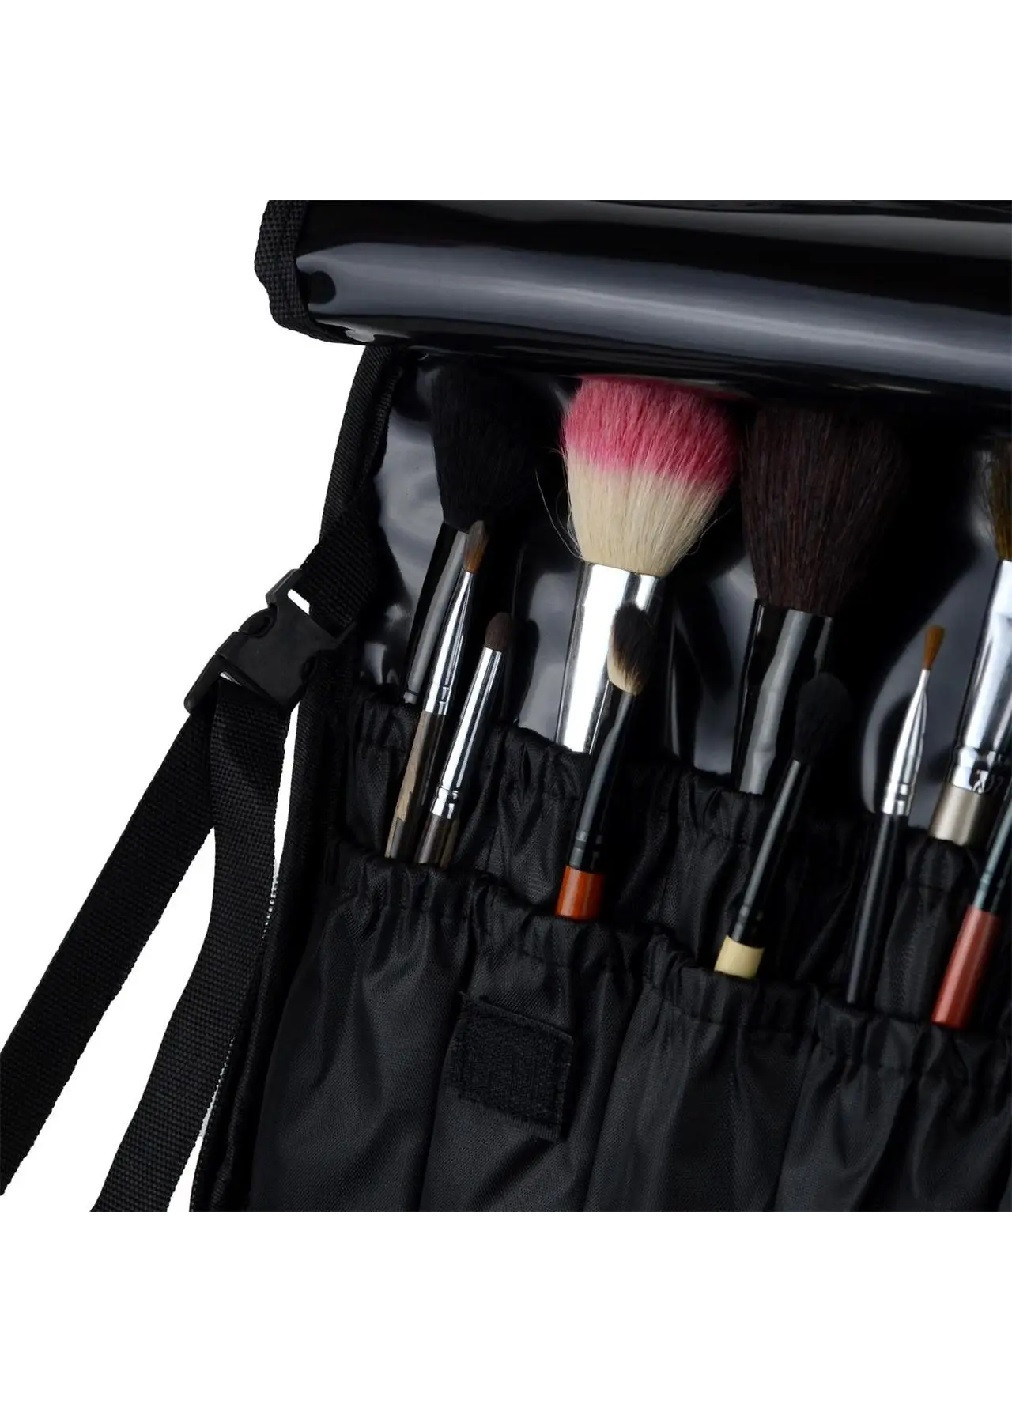 Органайзер бокс бьюти кейс косметичка чемоданчик сумка для хранения косметики и аксессуаров 37х26х13 см (475110-Prob) Черный Unbranded (262083041)